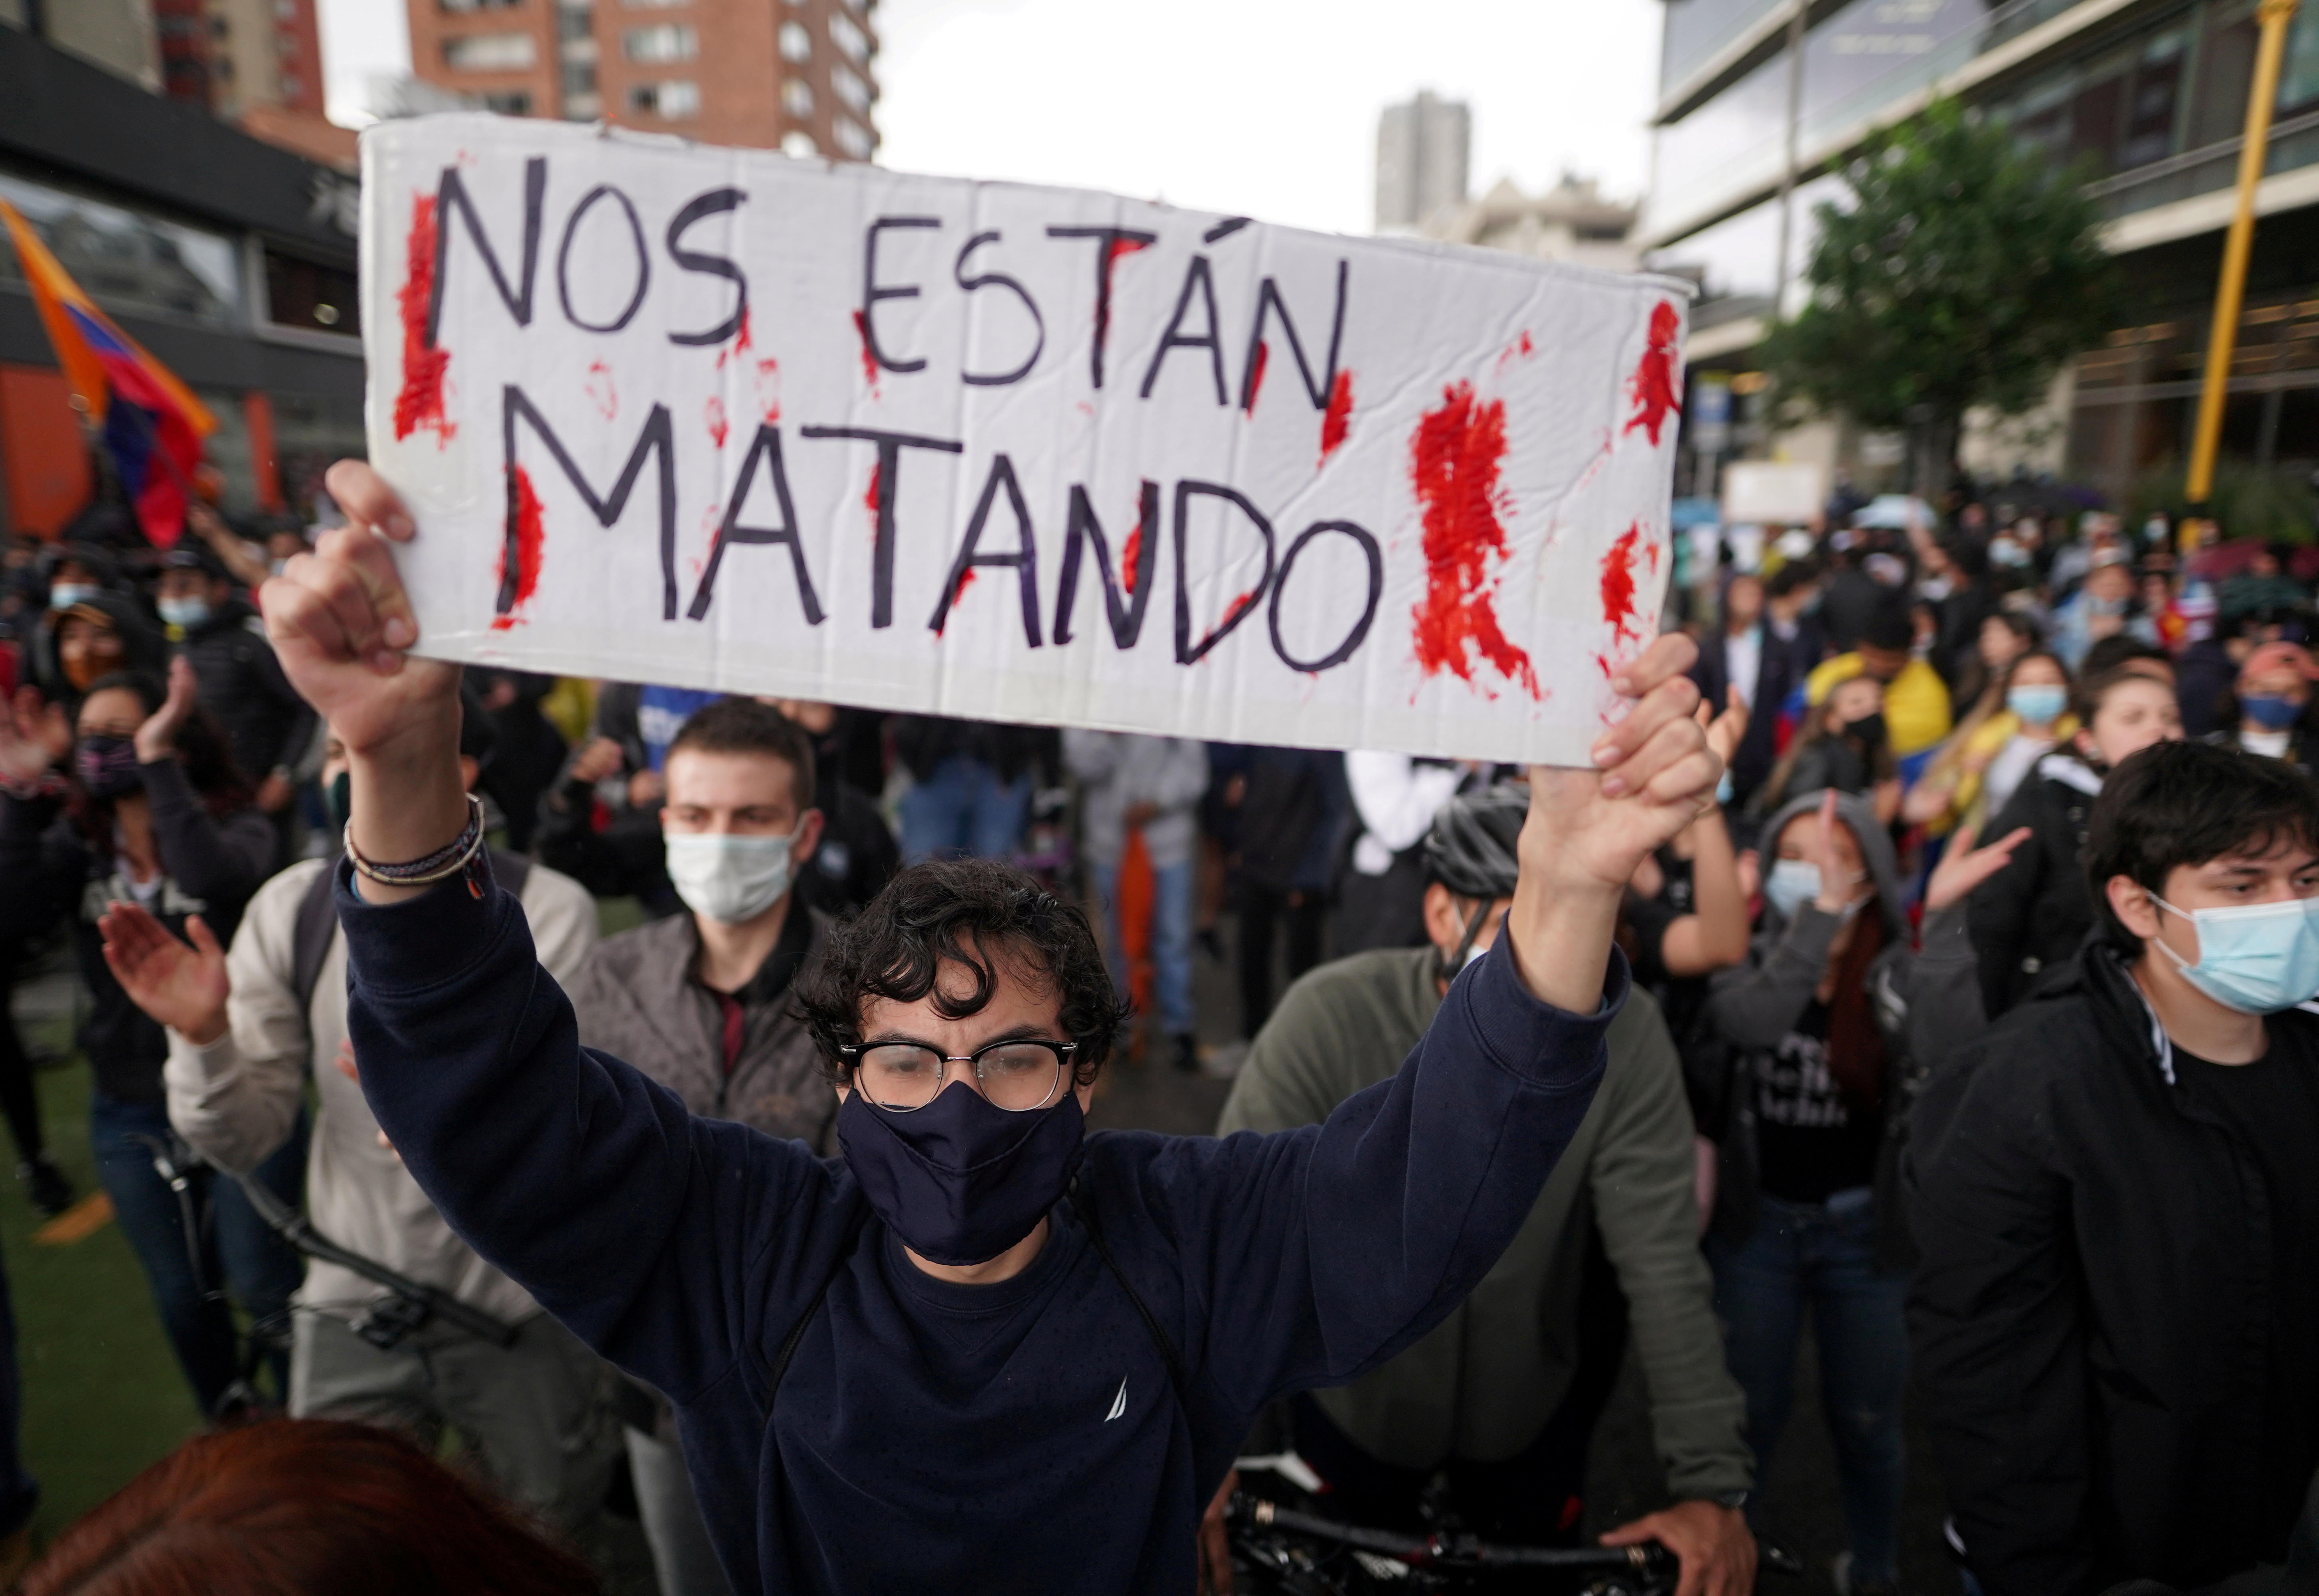 Un manifestante sostiene un cartel en el que se lee "Nos están matando", durante una protesta en Bogotá, Colombia, el 4 de mayo de 2021 (Reuters/ Nathalia Angarita)